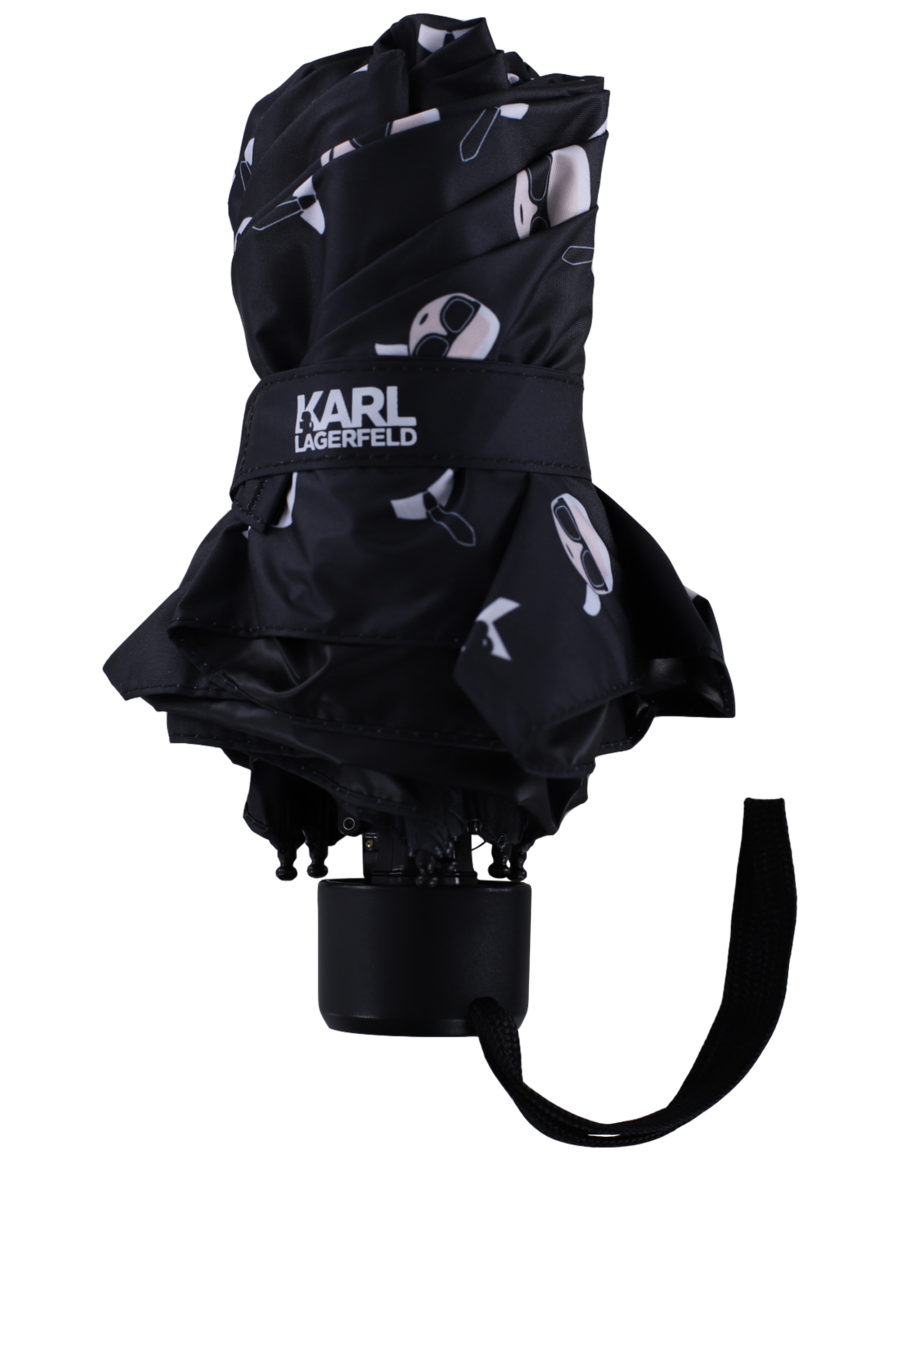 Paraguas color negro con patrón de la marca - IMG 0131